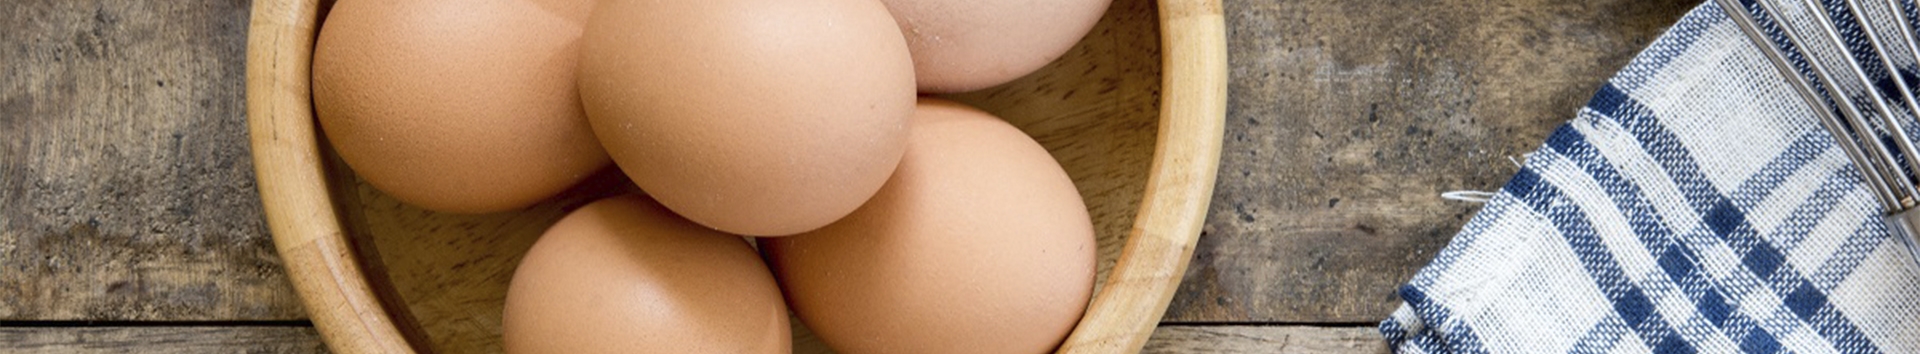 Atenção: Problema no coração pode ser causado por ovo? Estudo diz que sim! Será verdade?